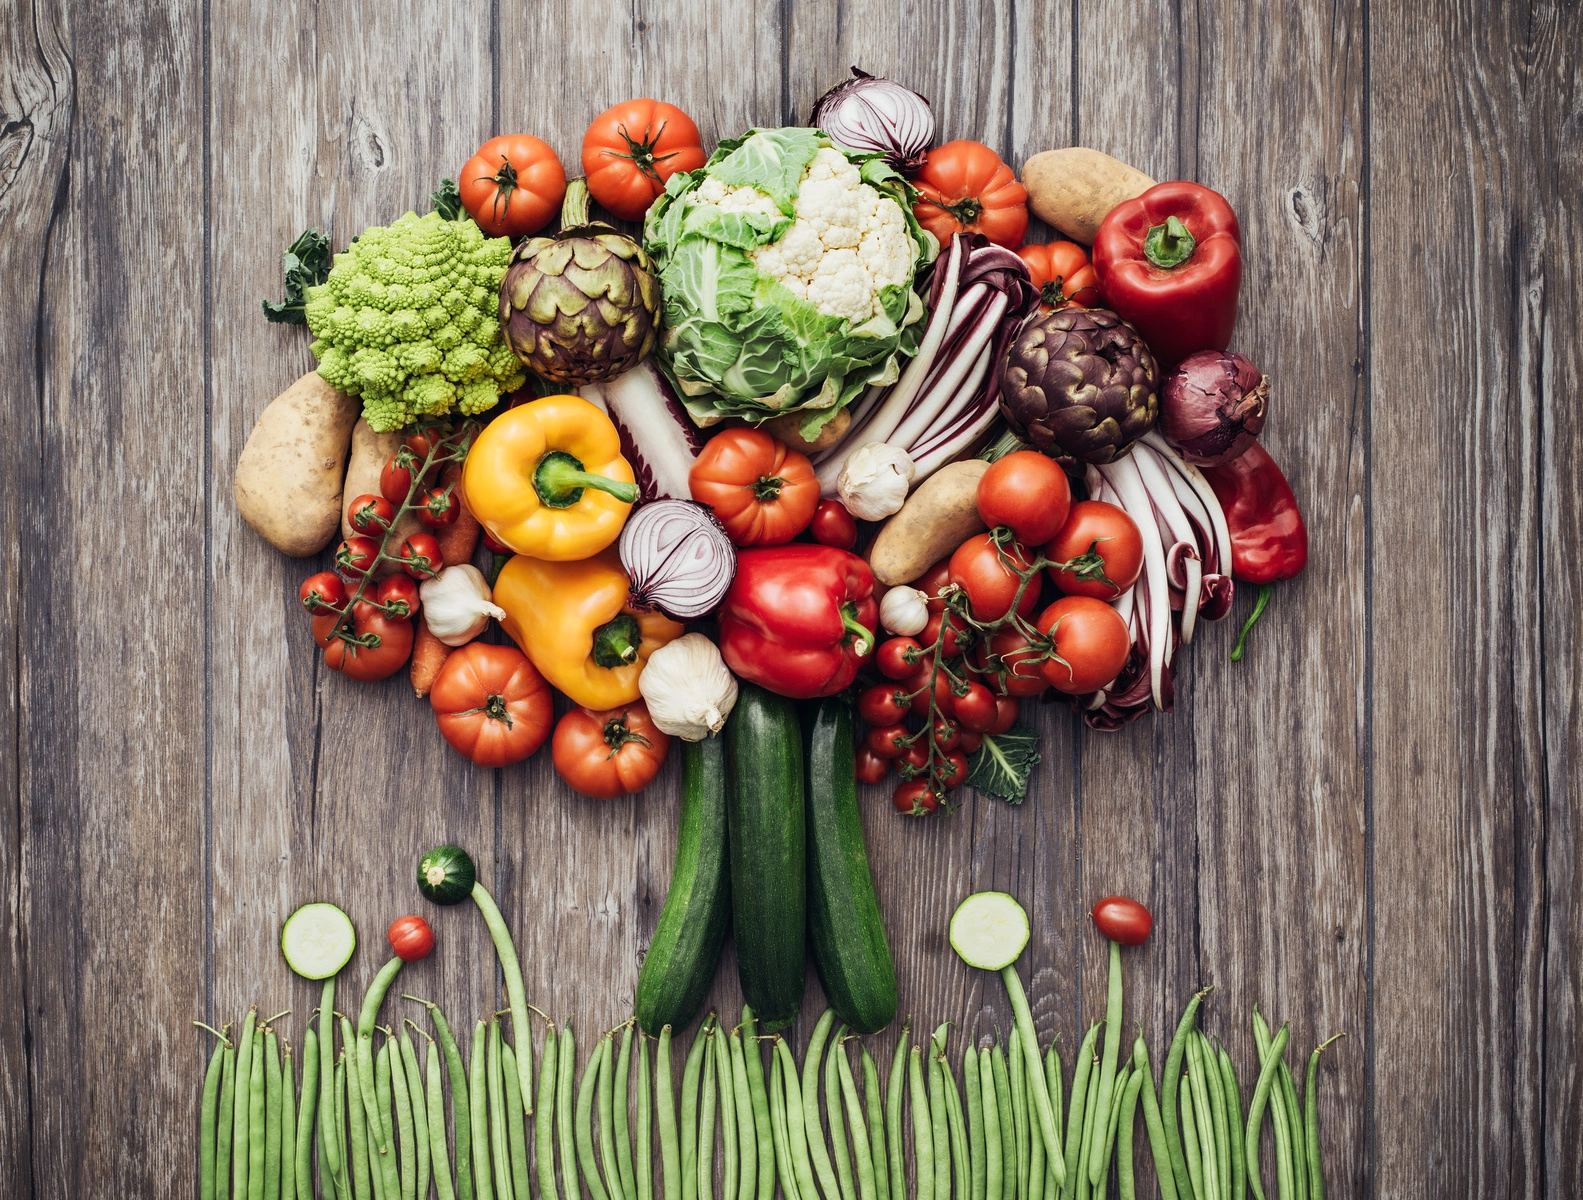 Co jeść, żeby schudnąć? Jaka jest najlepsza dieta na odchudzanie? Warzywa ułożone w kształt drzewa na drewnianym stole.